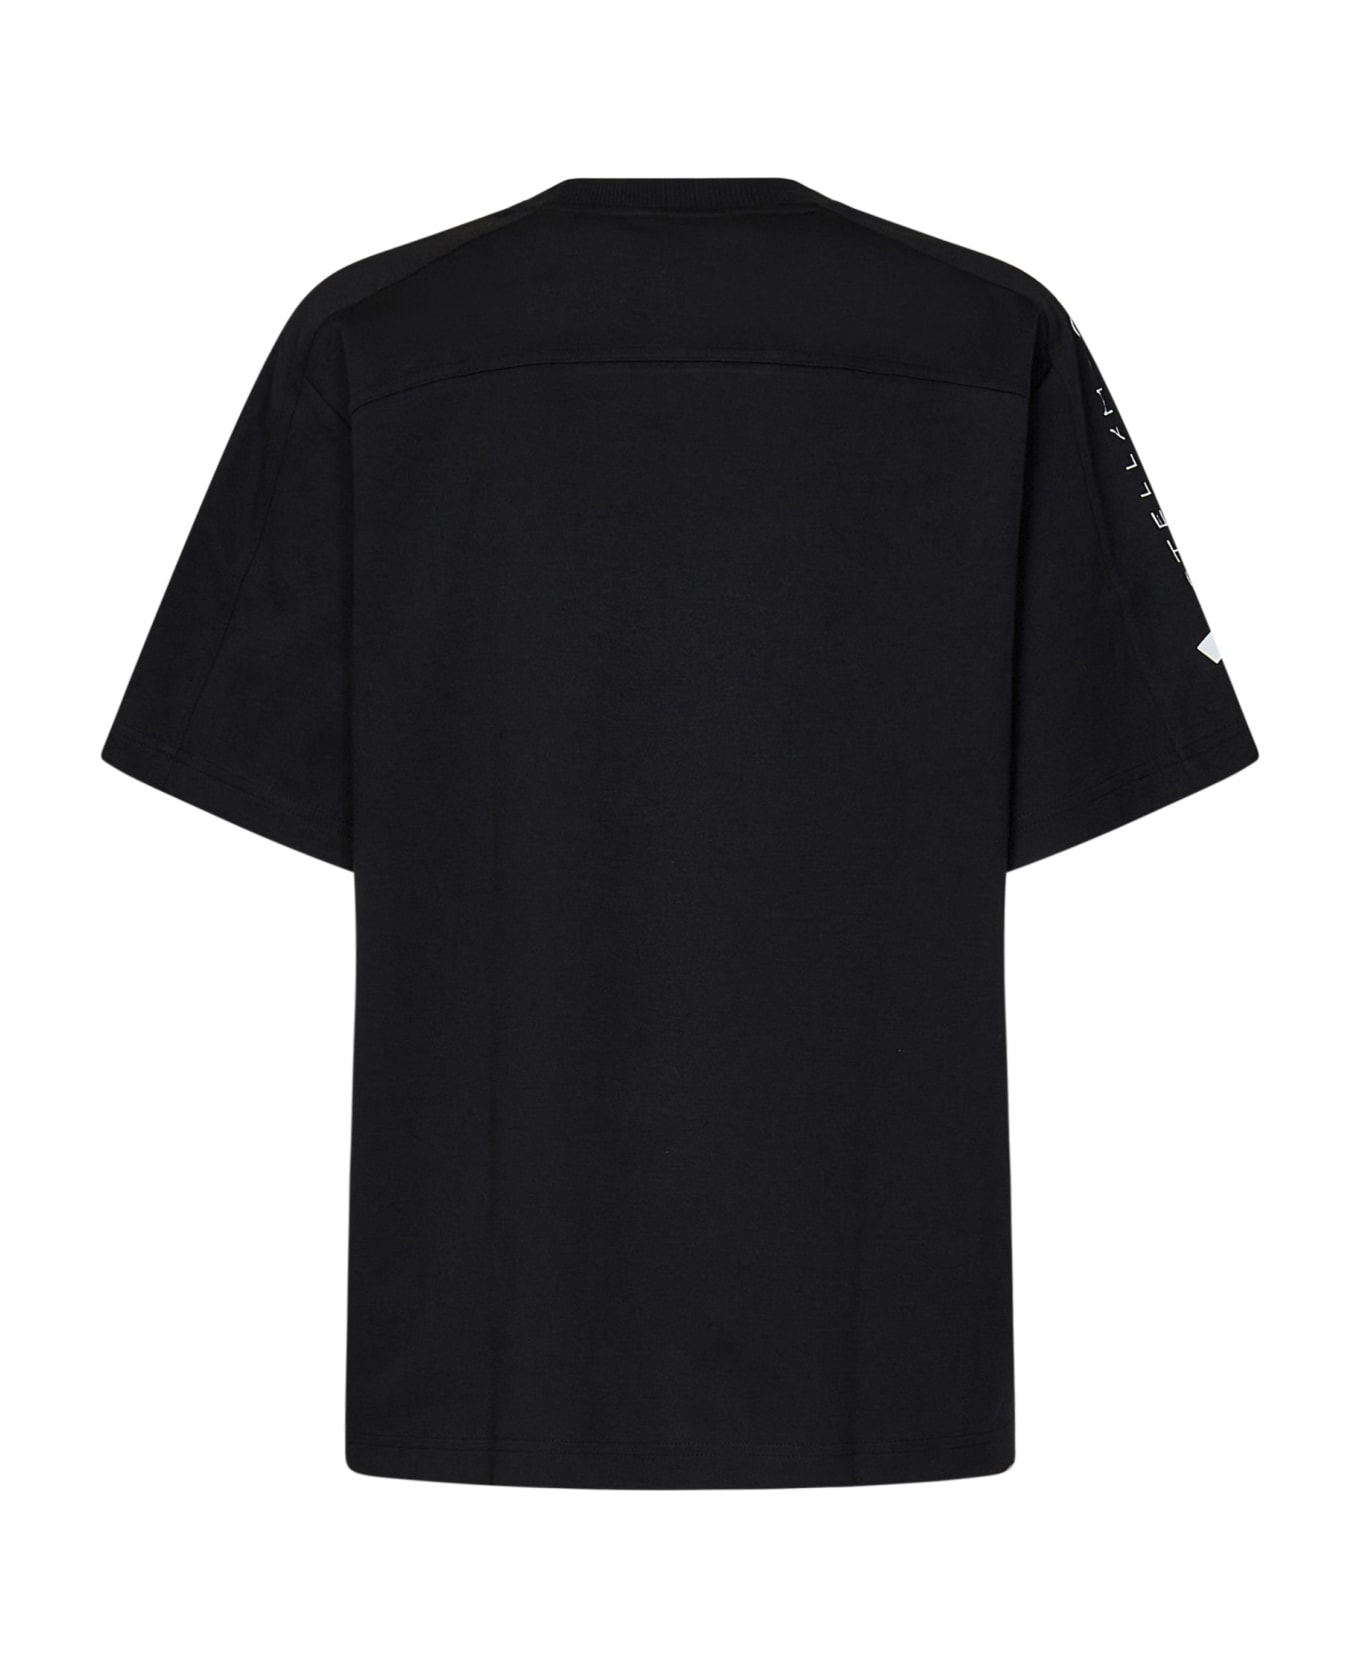 Adidas by Stella McCartney By Stella Mccartney T-shirt - Black Tシャツ